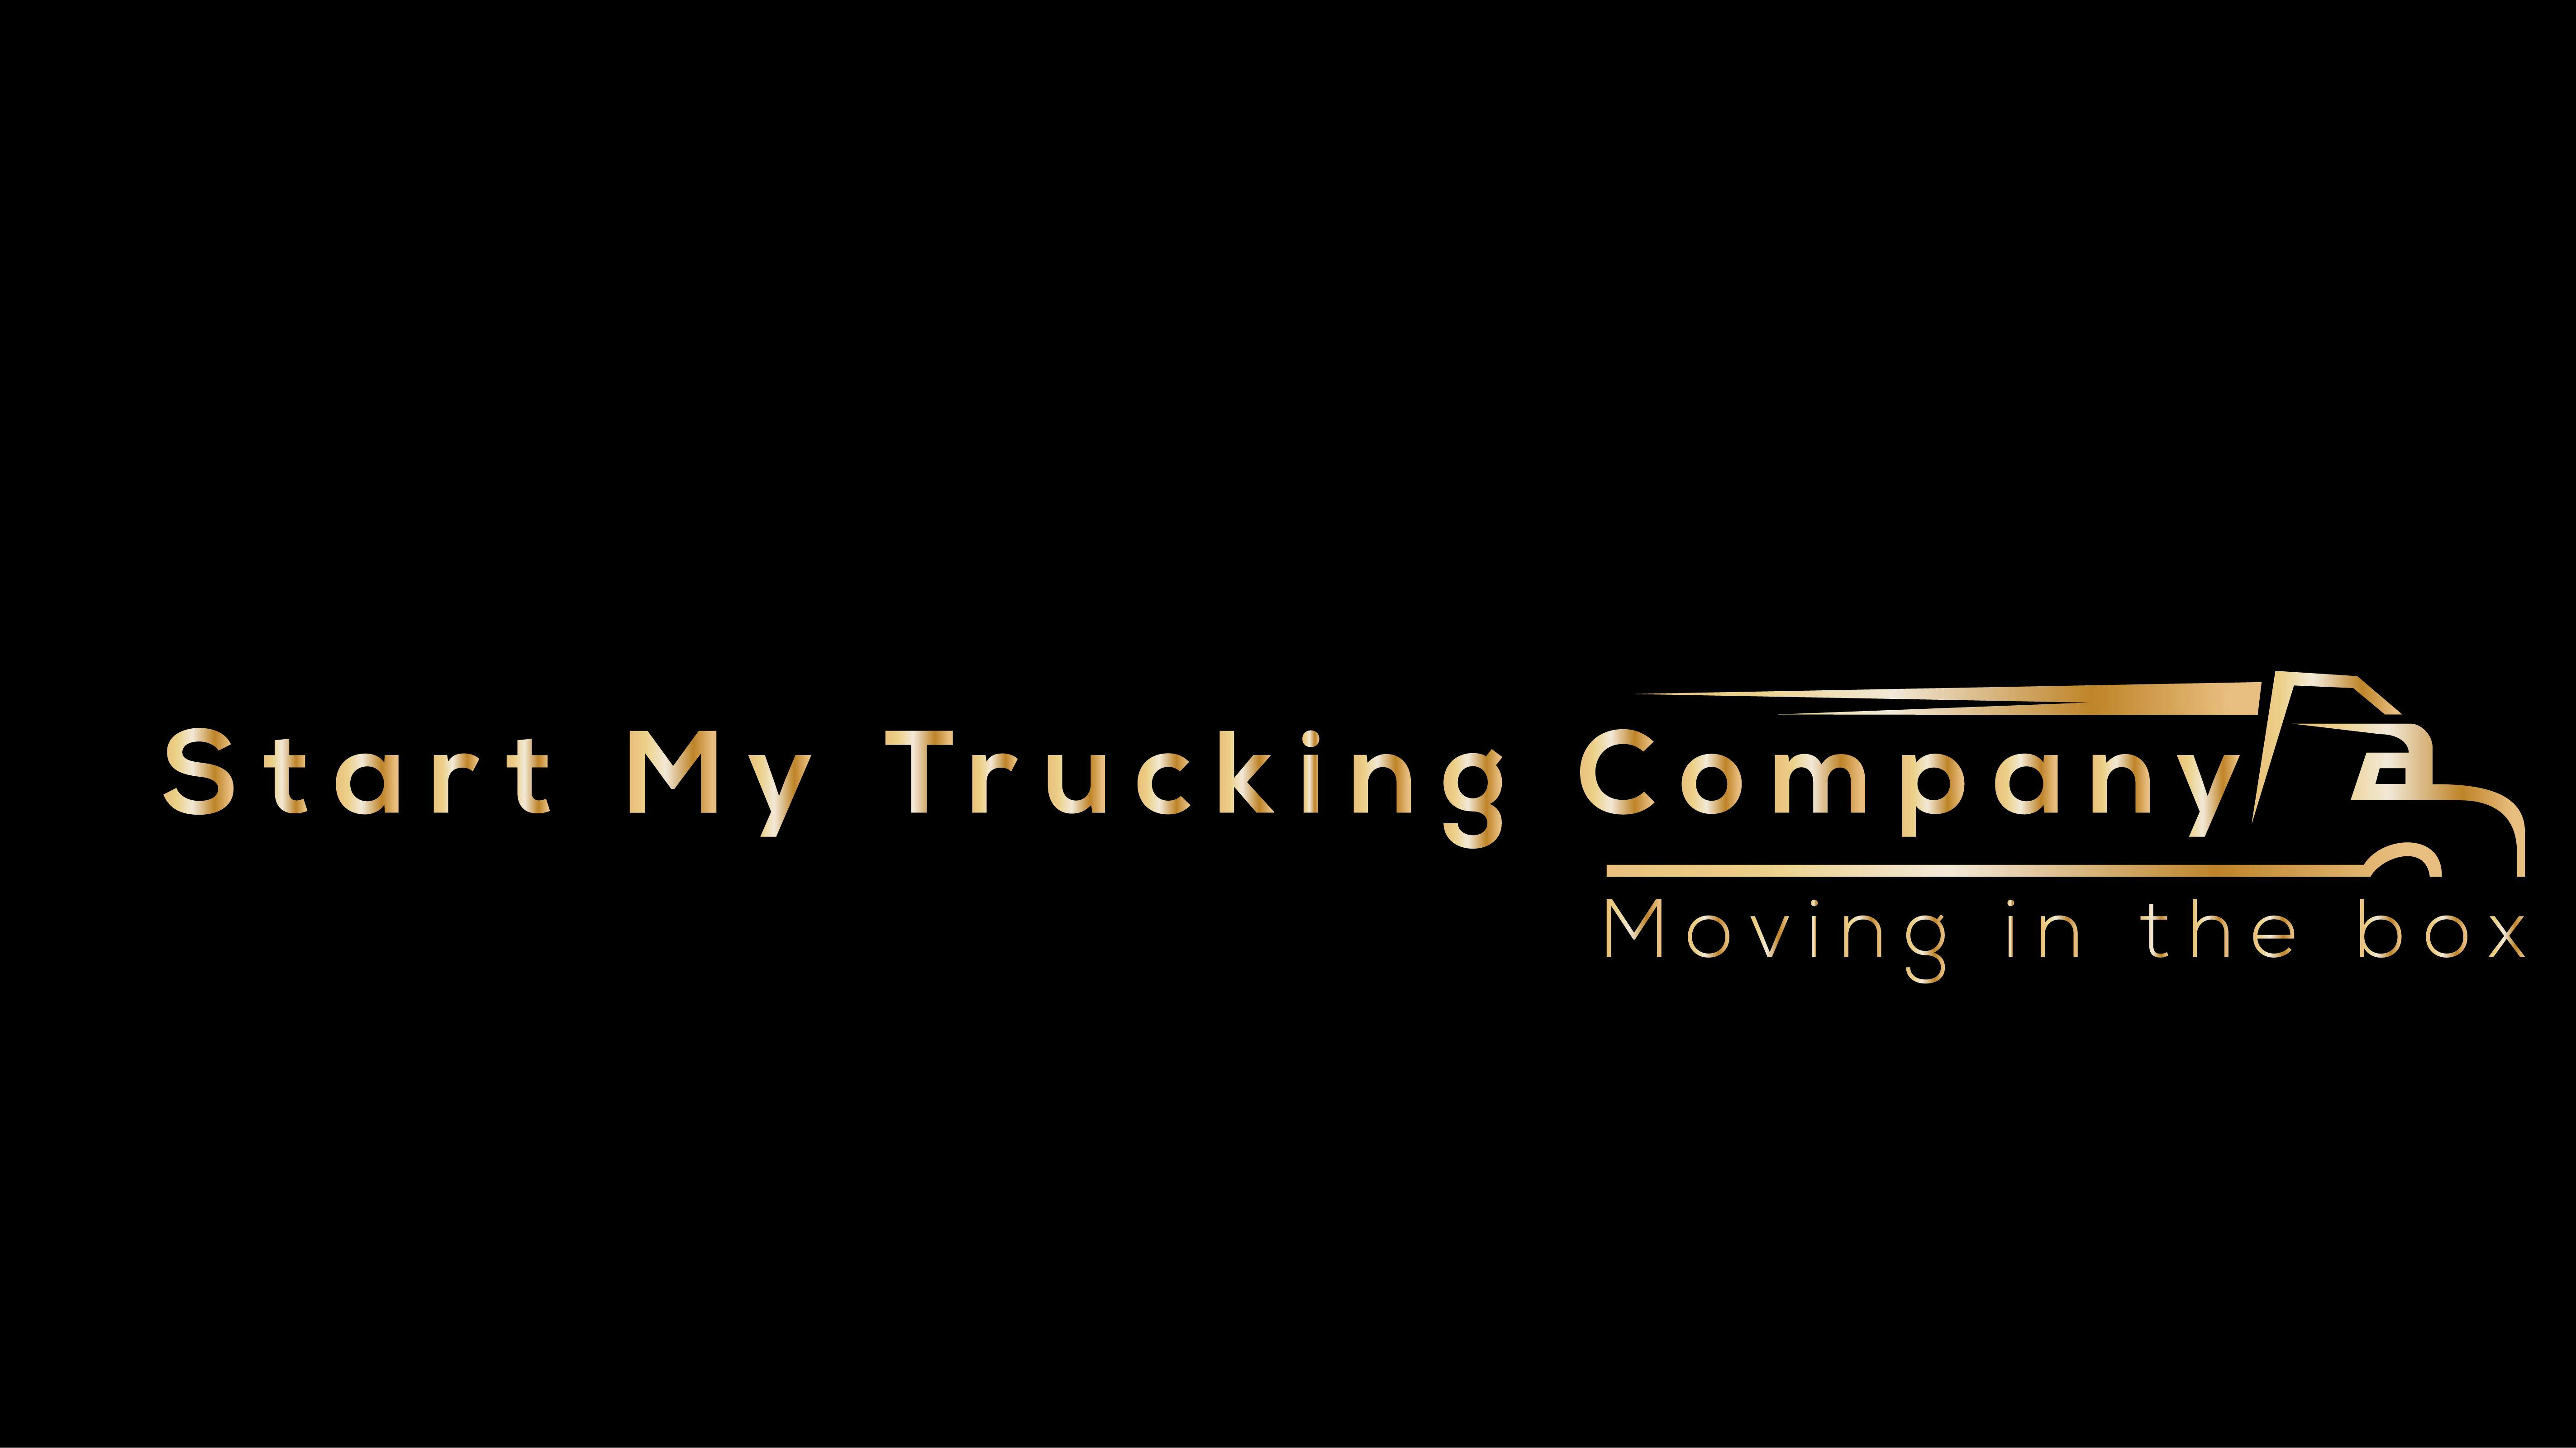 Start Trucking Company Seminar 13 Jul 2019